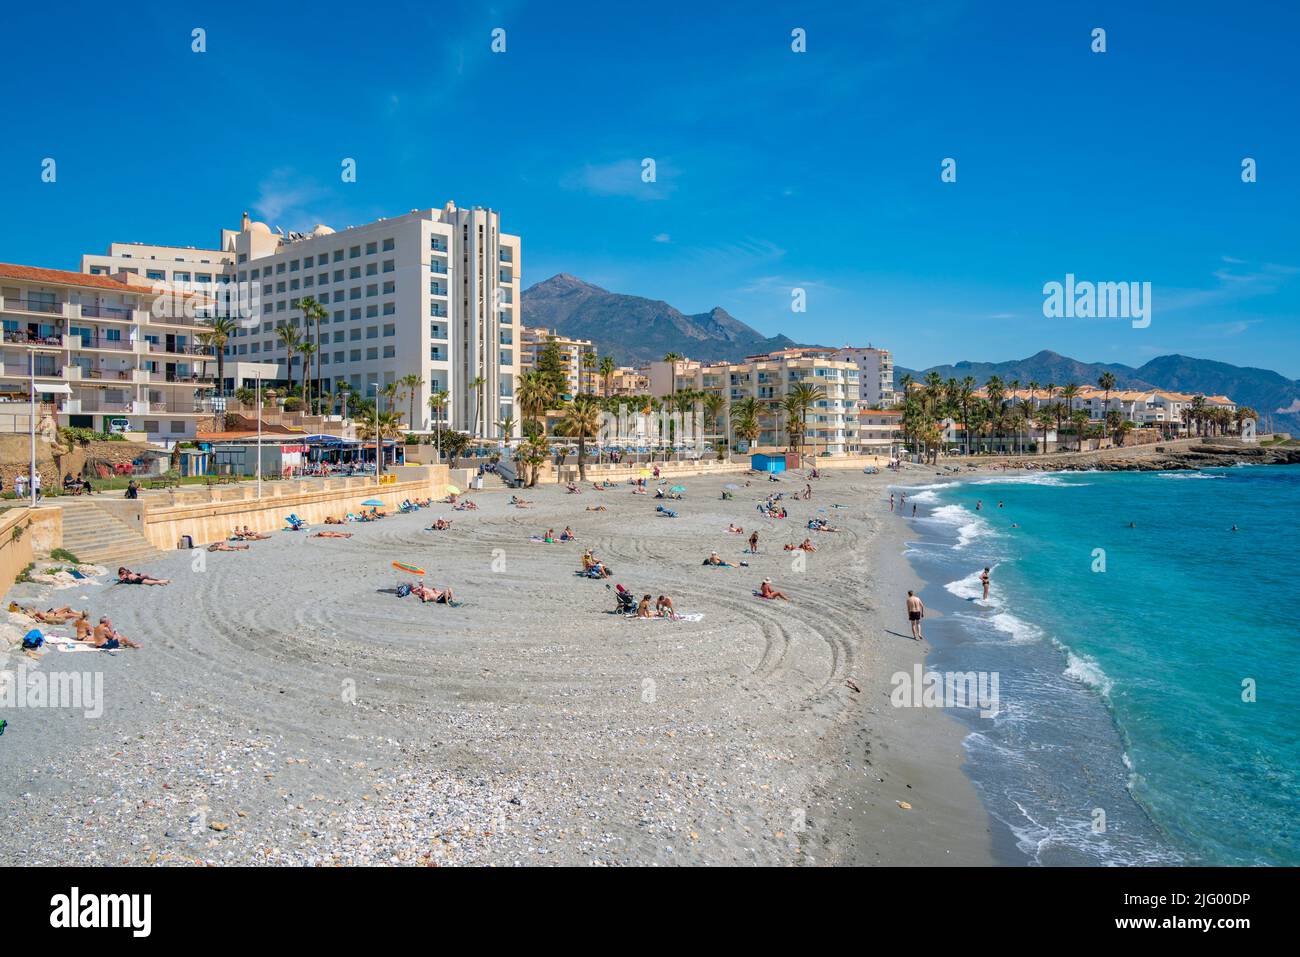 Vista de la playa, hoteles y costa en Nerja, Nerja, provincia de Málaga, Andalucía, España, Mediterráneo, Europa Foto de stock